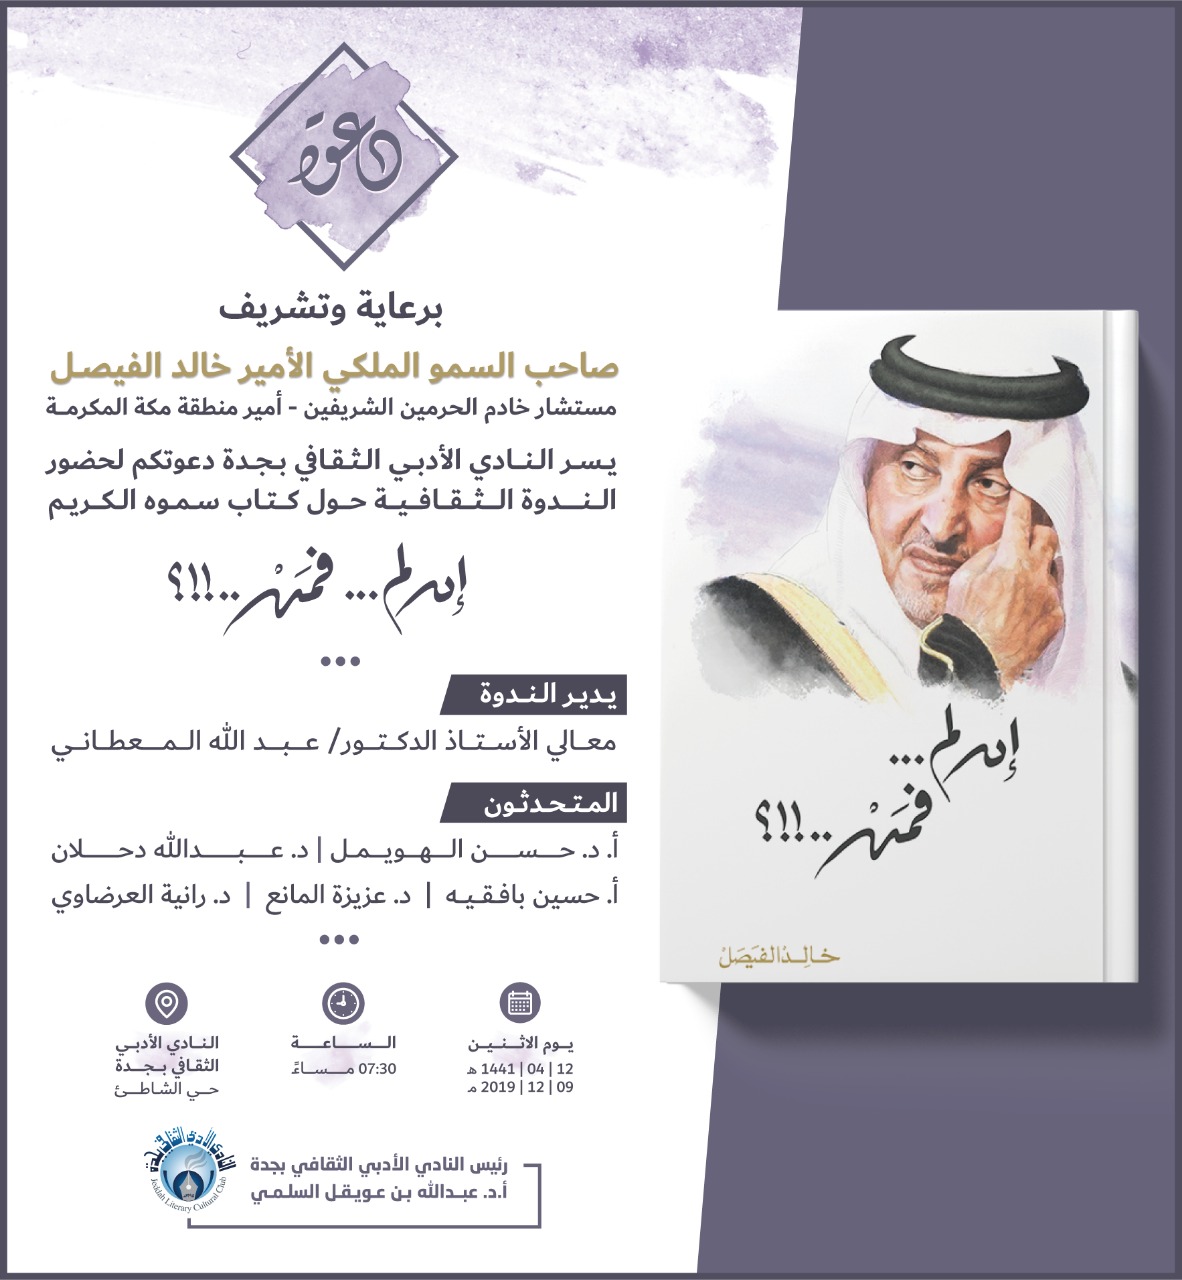 أمسية ثقافية حول كتاب صاحب السمو الملكي الأمير خالد الفيصل ( إن لم ..فمن .!؟) بنادي جدة الأدبي يوم غدٍ الإثنين